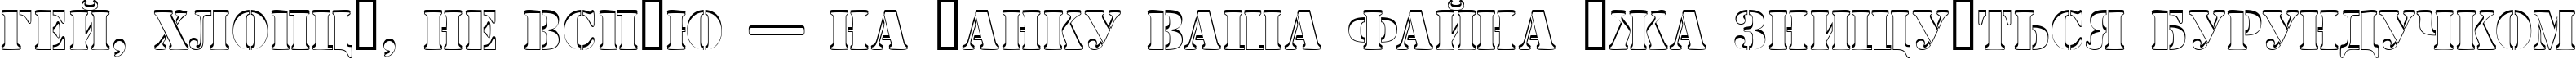 Пример написания шрифтом a_StamperSh текста на украинском